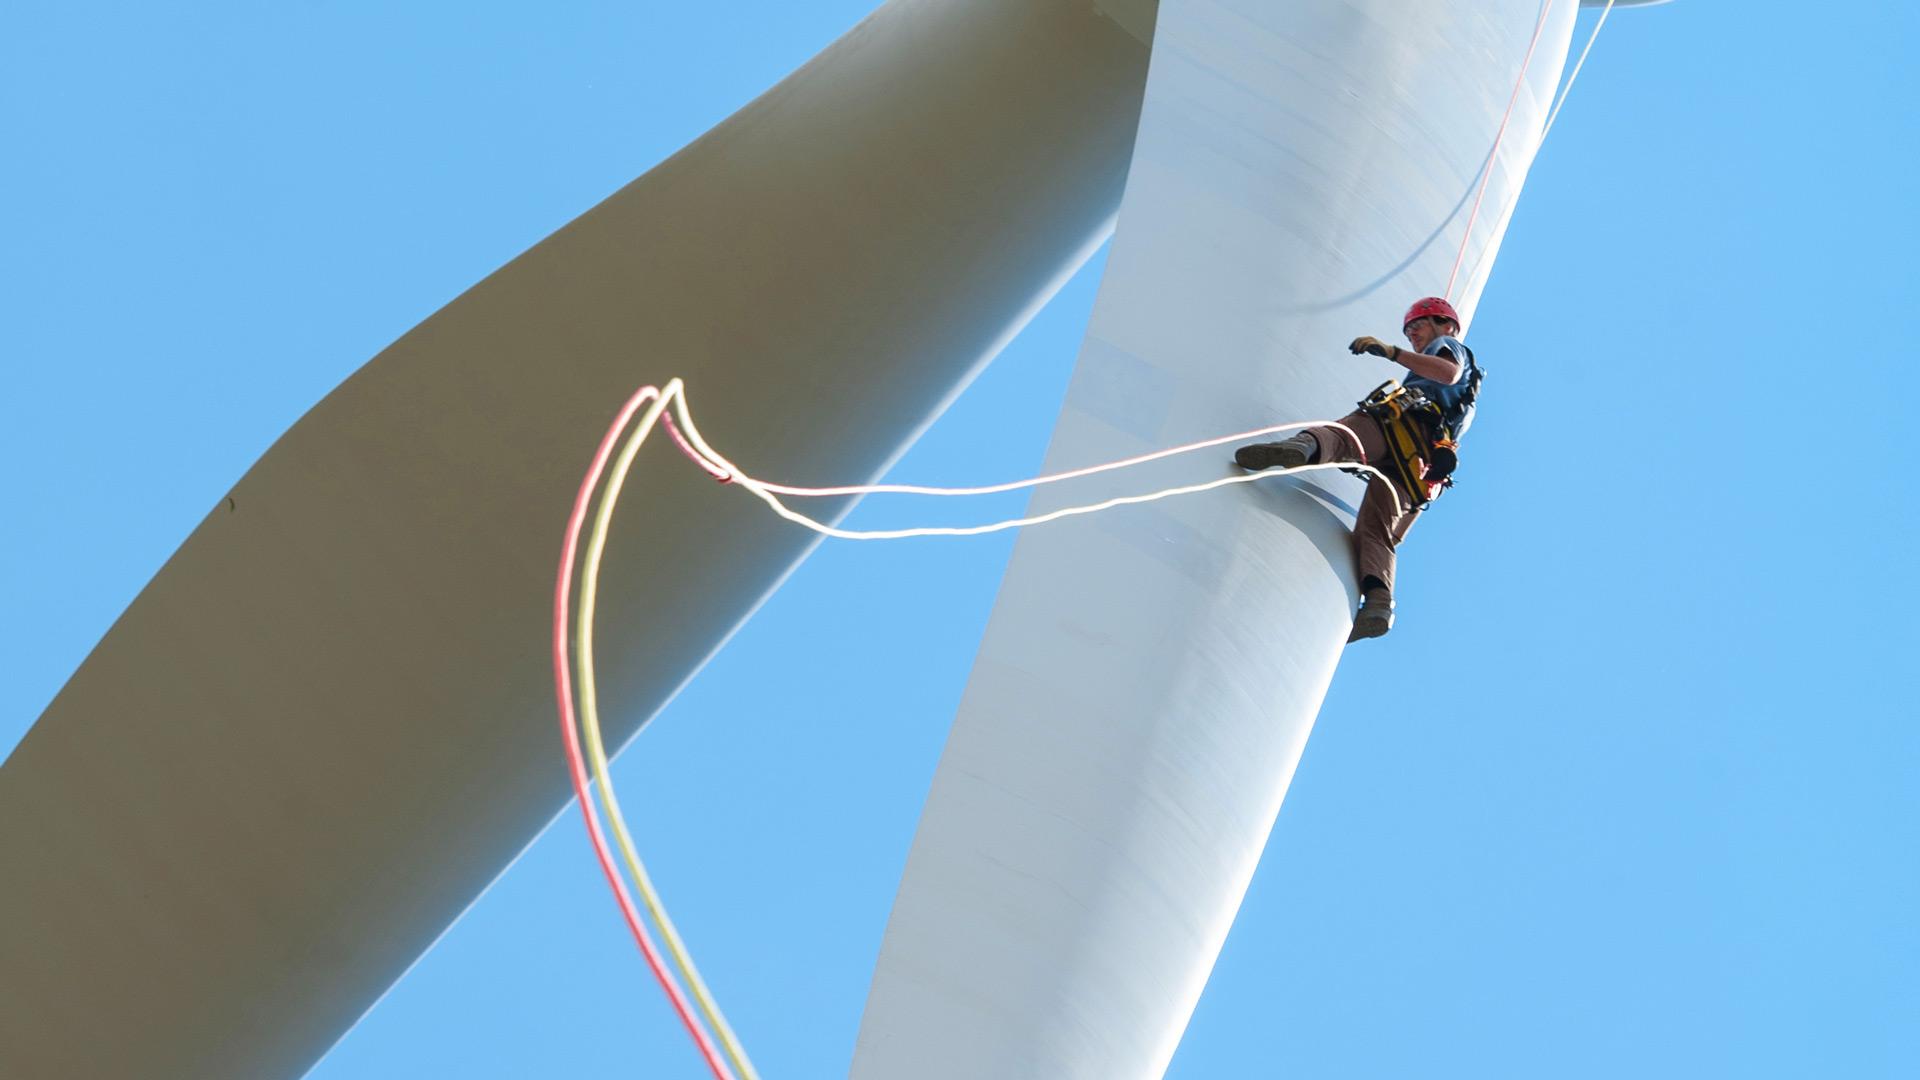 Worker rapelling down a wind turbine blade